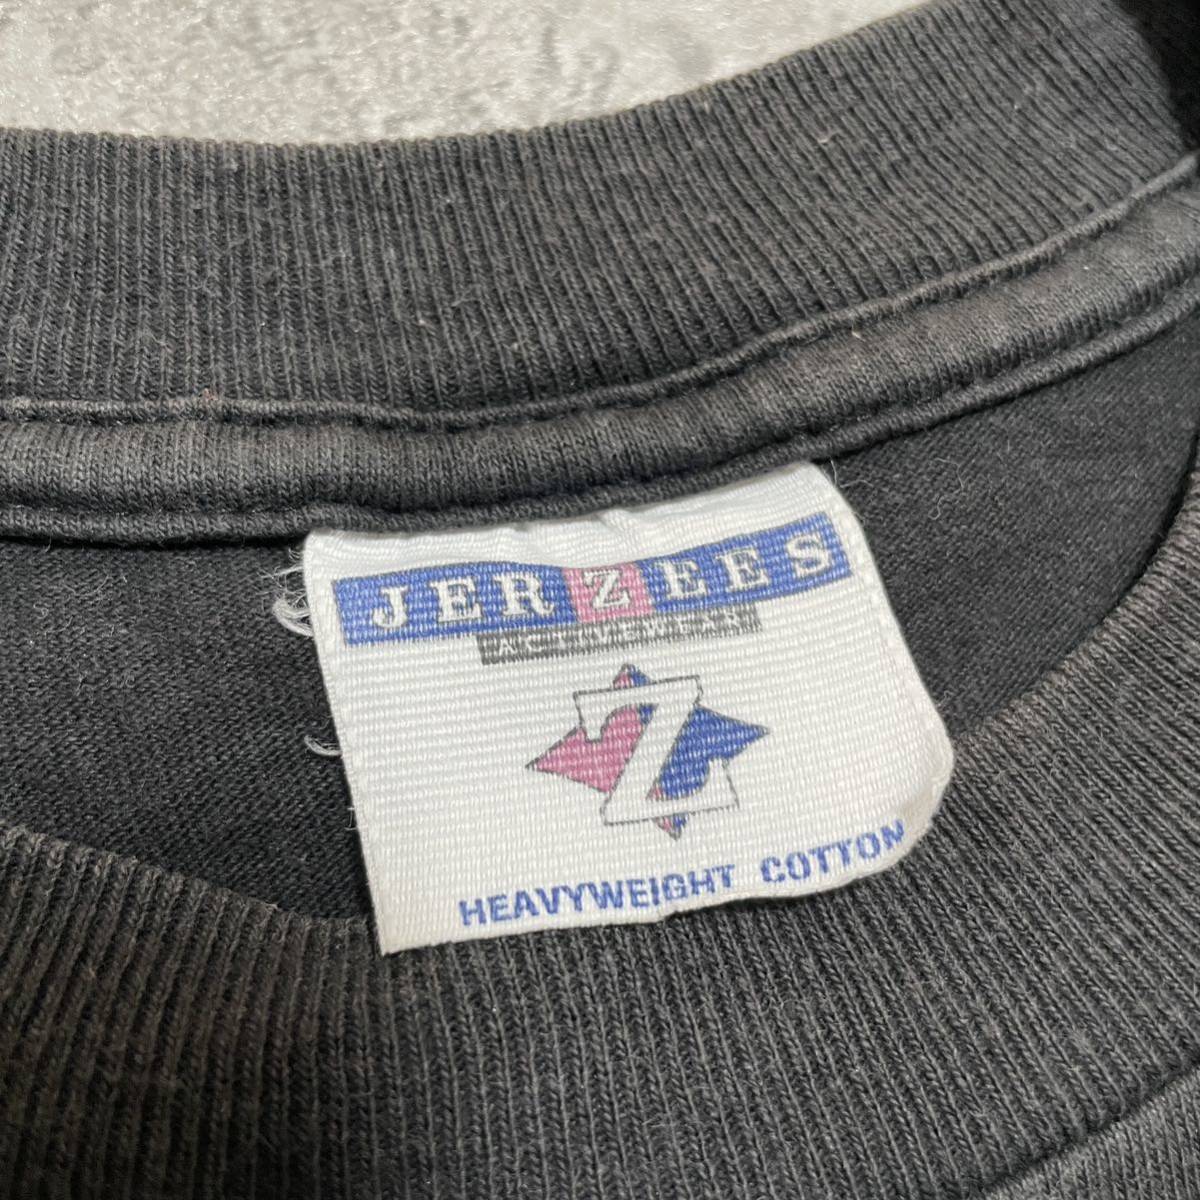 90s JERZEES ジャージーズ Tシャツ 半袖 ビッグロゴ USA企画 ブラック プリントロゴ ヴィンテージ vintage サイズS 玉FL2957 Tee _画像6